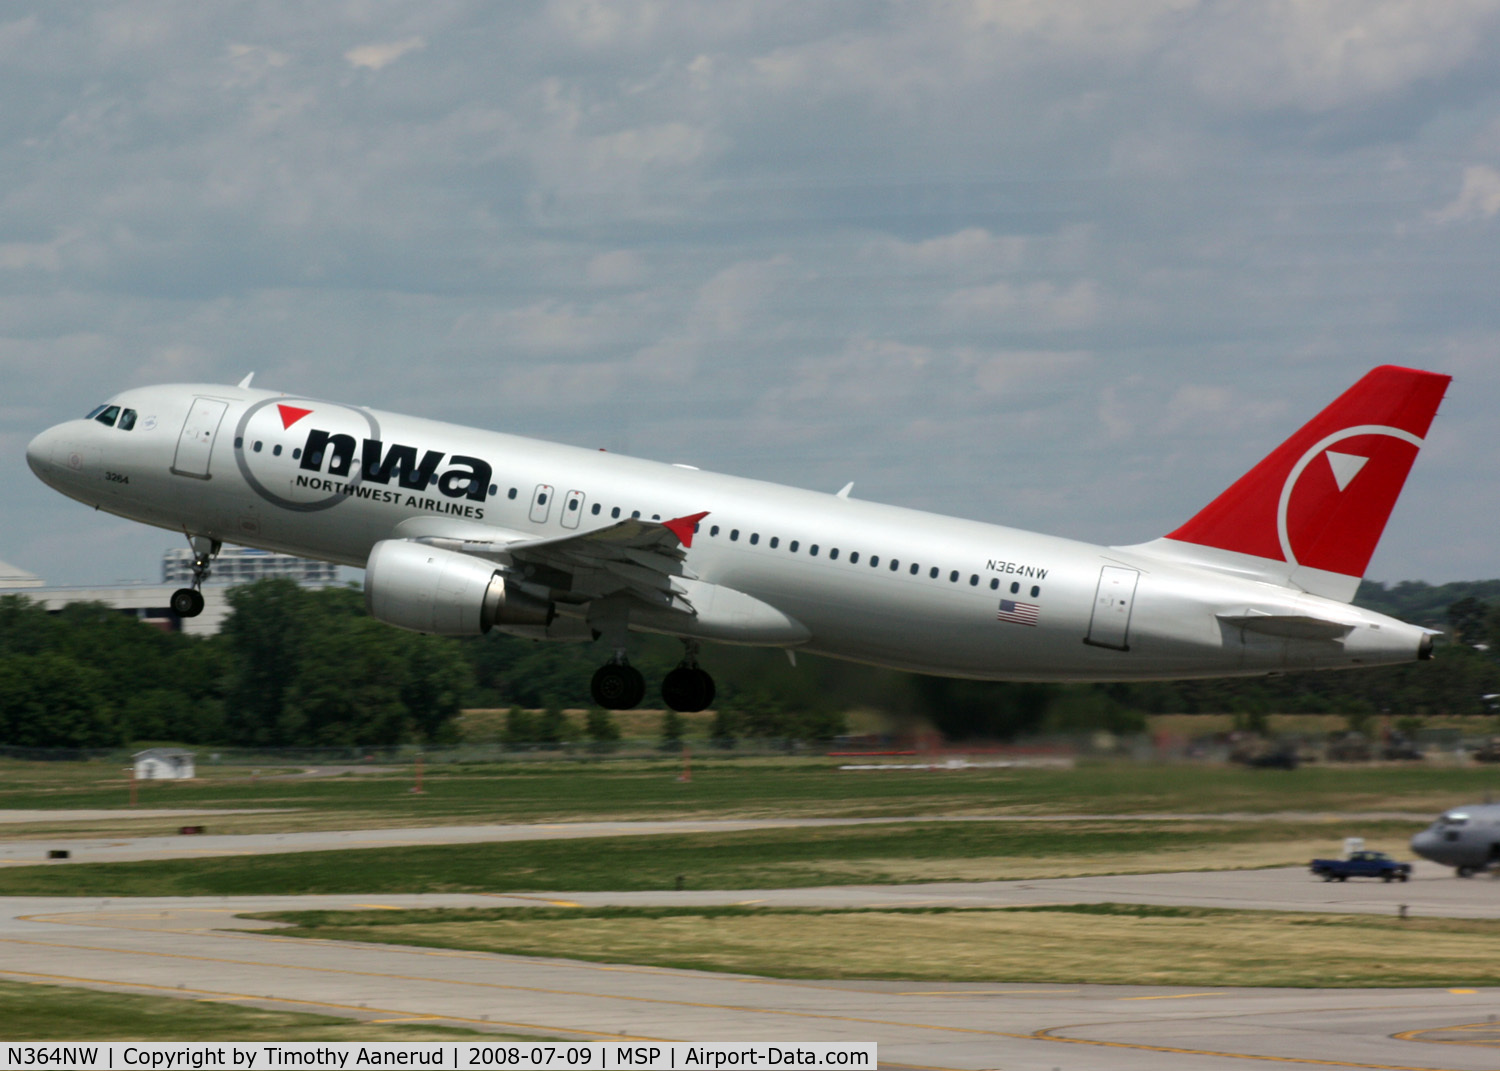 N364NW, 1999 Airbus A320-212 C/N 0962, Departing runway 30R